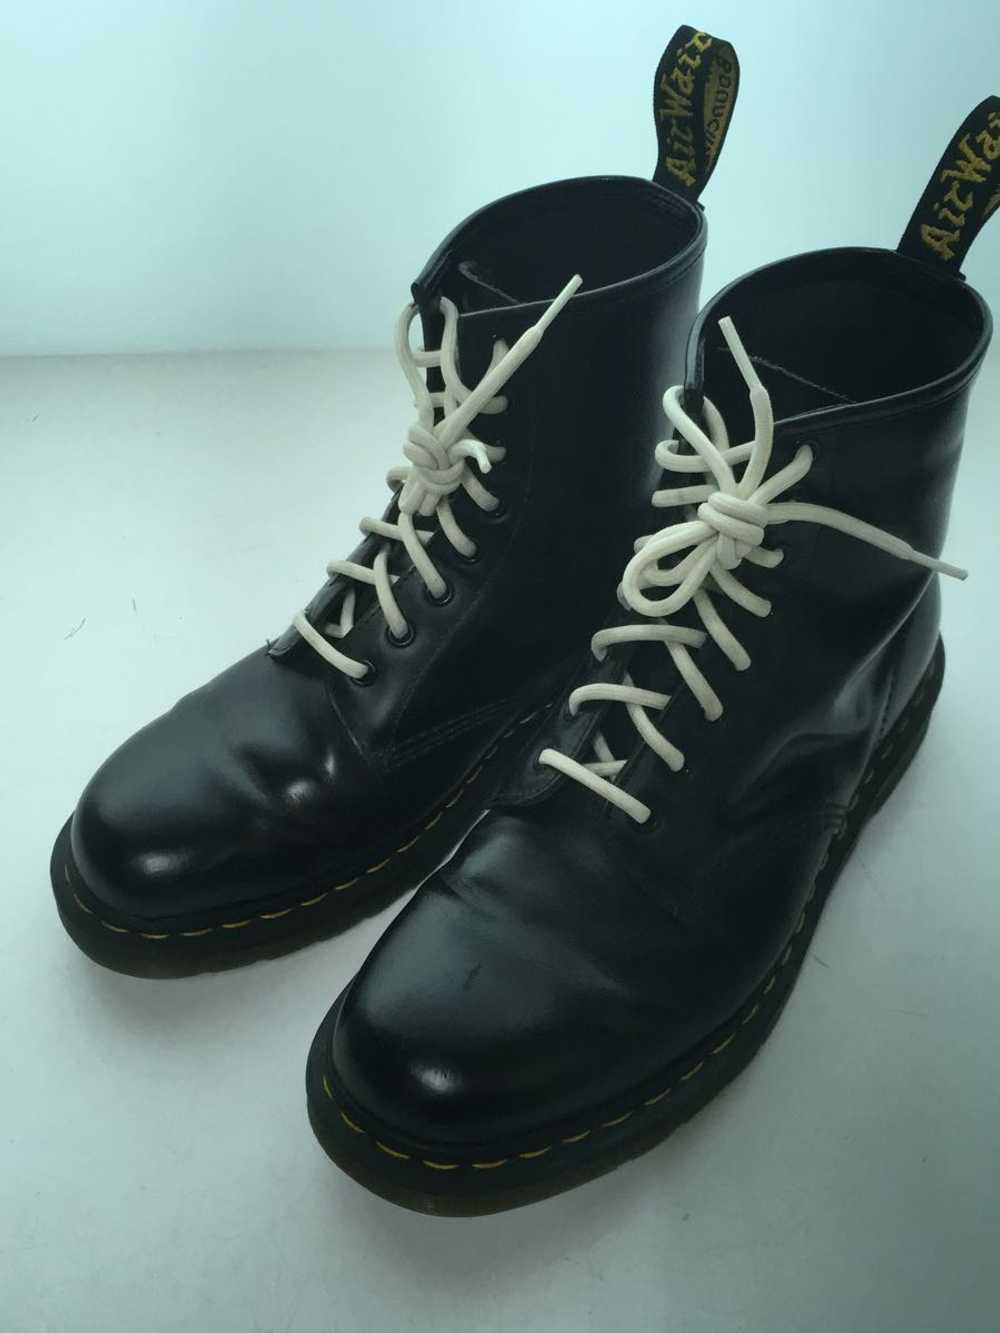 Dr.Martens Boots/Uk9/Blk/Leather/11822/Wrinkle Sh… - image 2